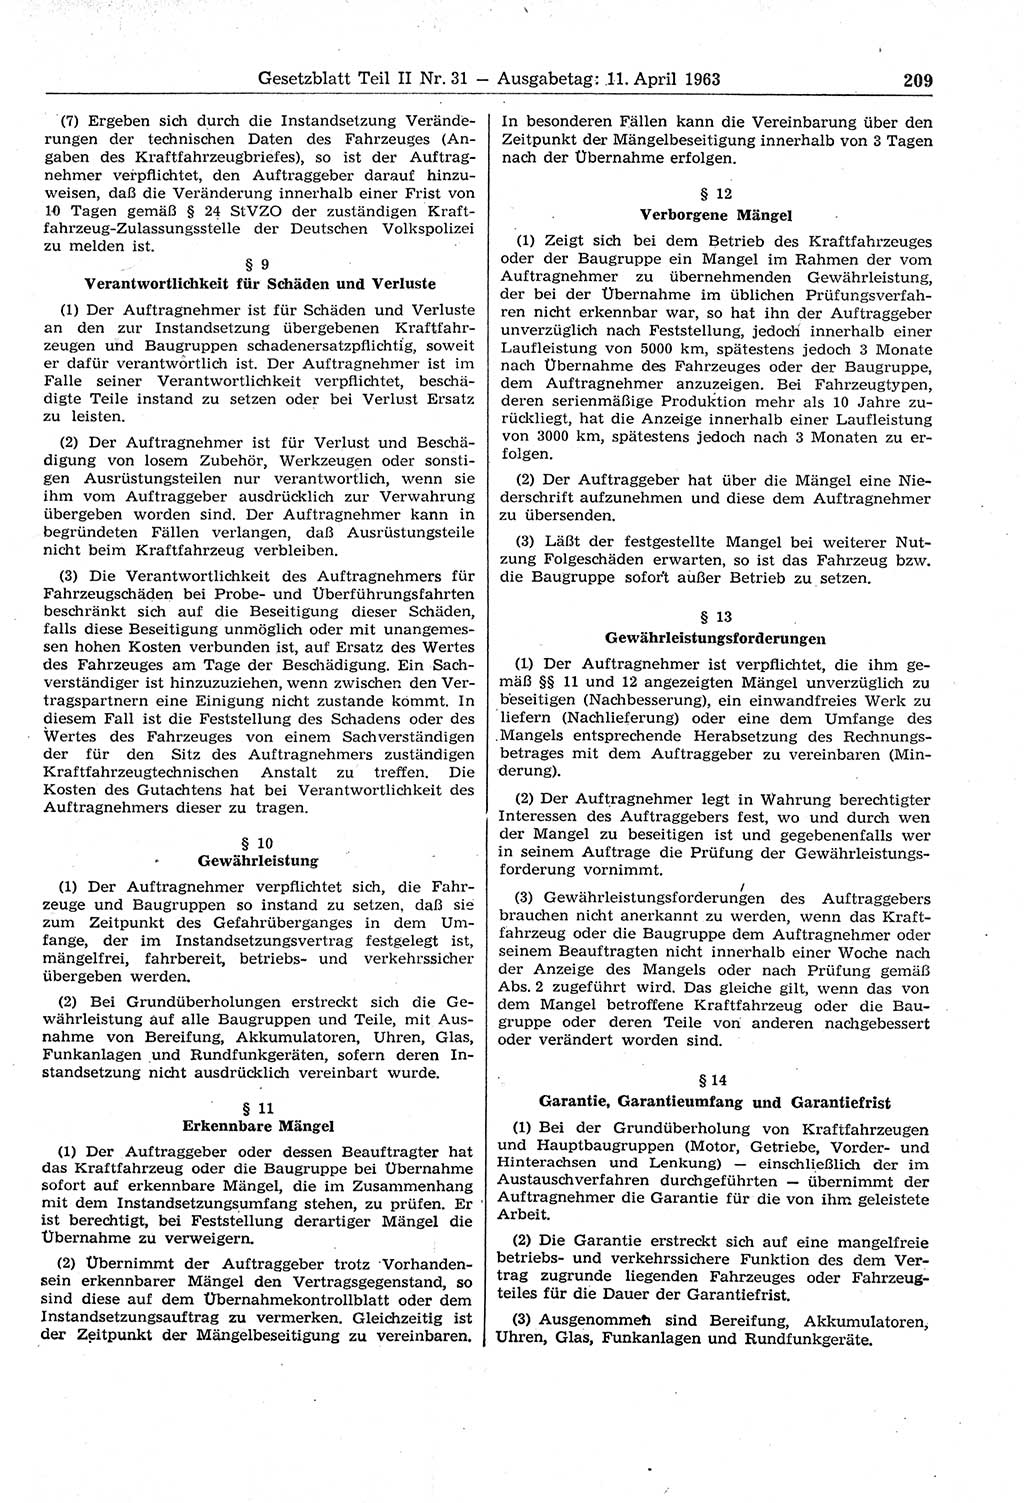 Gesetzblatt (GBl.) der Deutschen Demokratischen Republik (DDR) Teil ⅠⅠ 1963, Seite 209 (GBl. DDR ⅠⅠ 1963, S. 209)